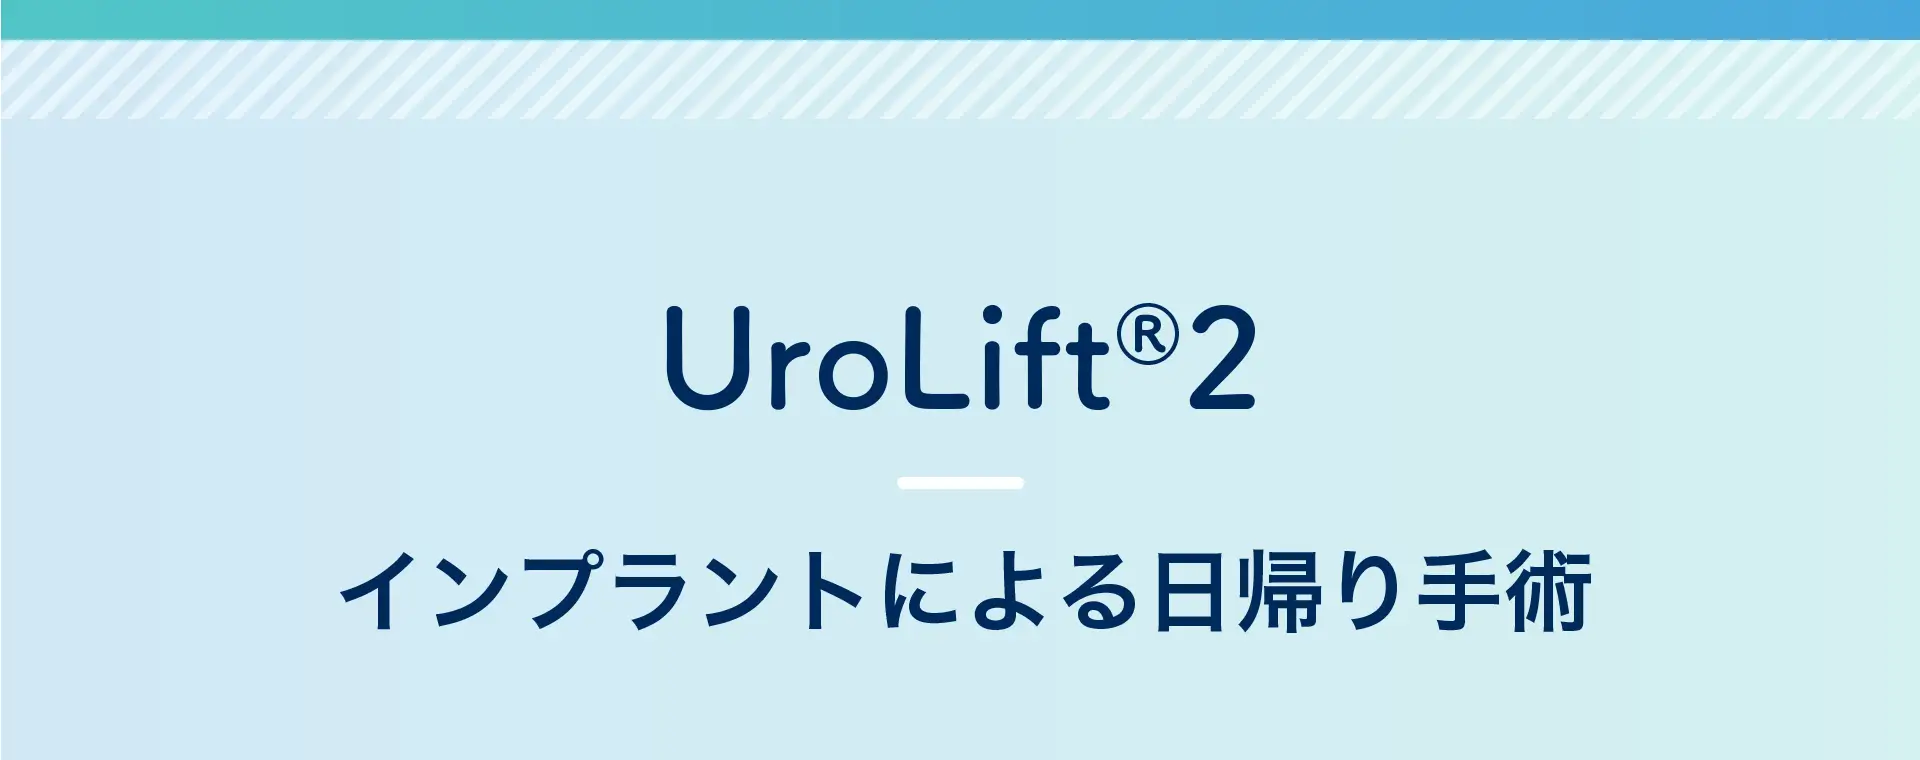 UroLift 2